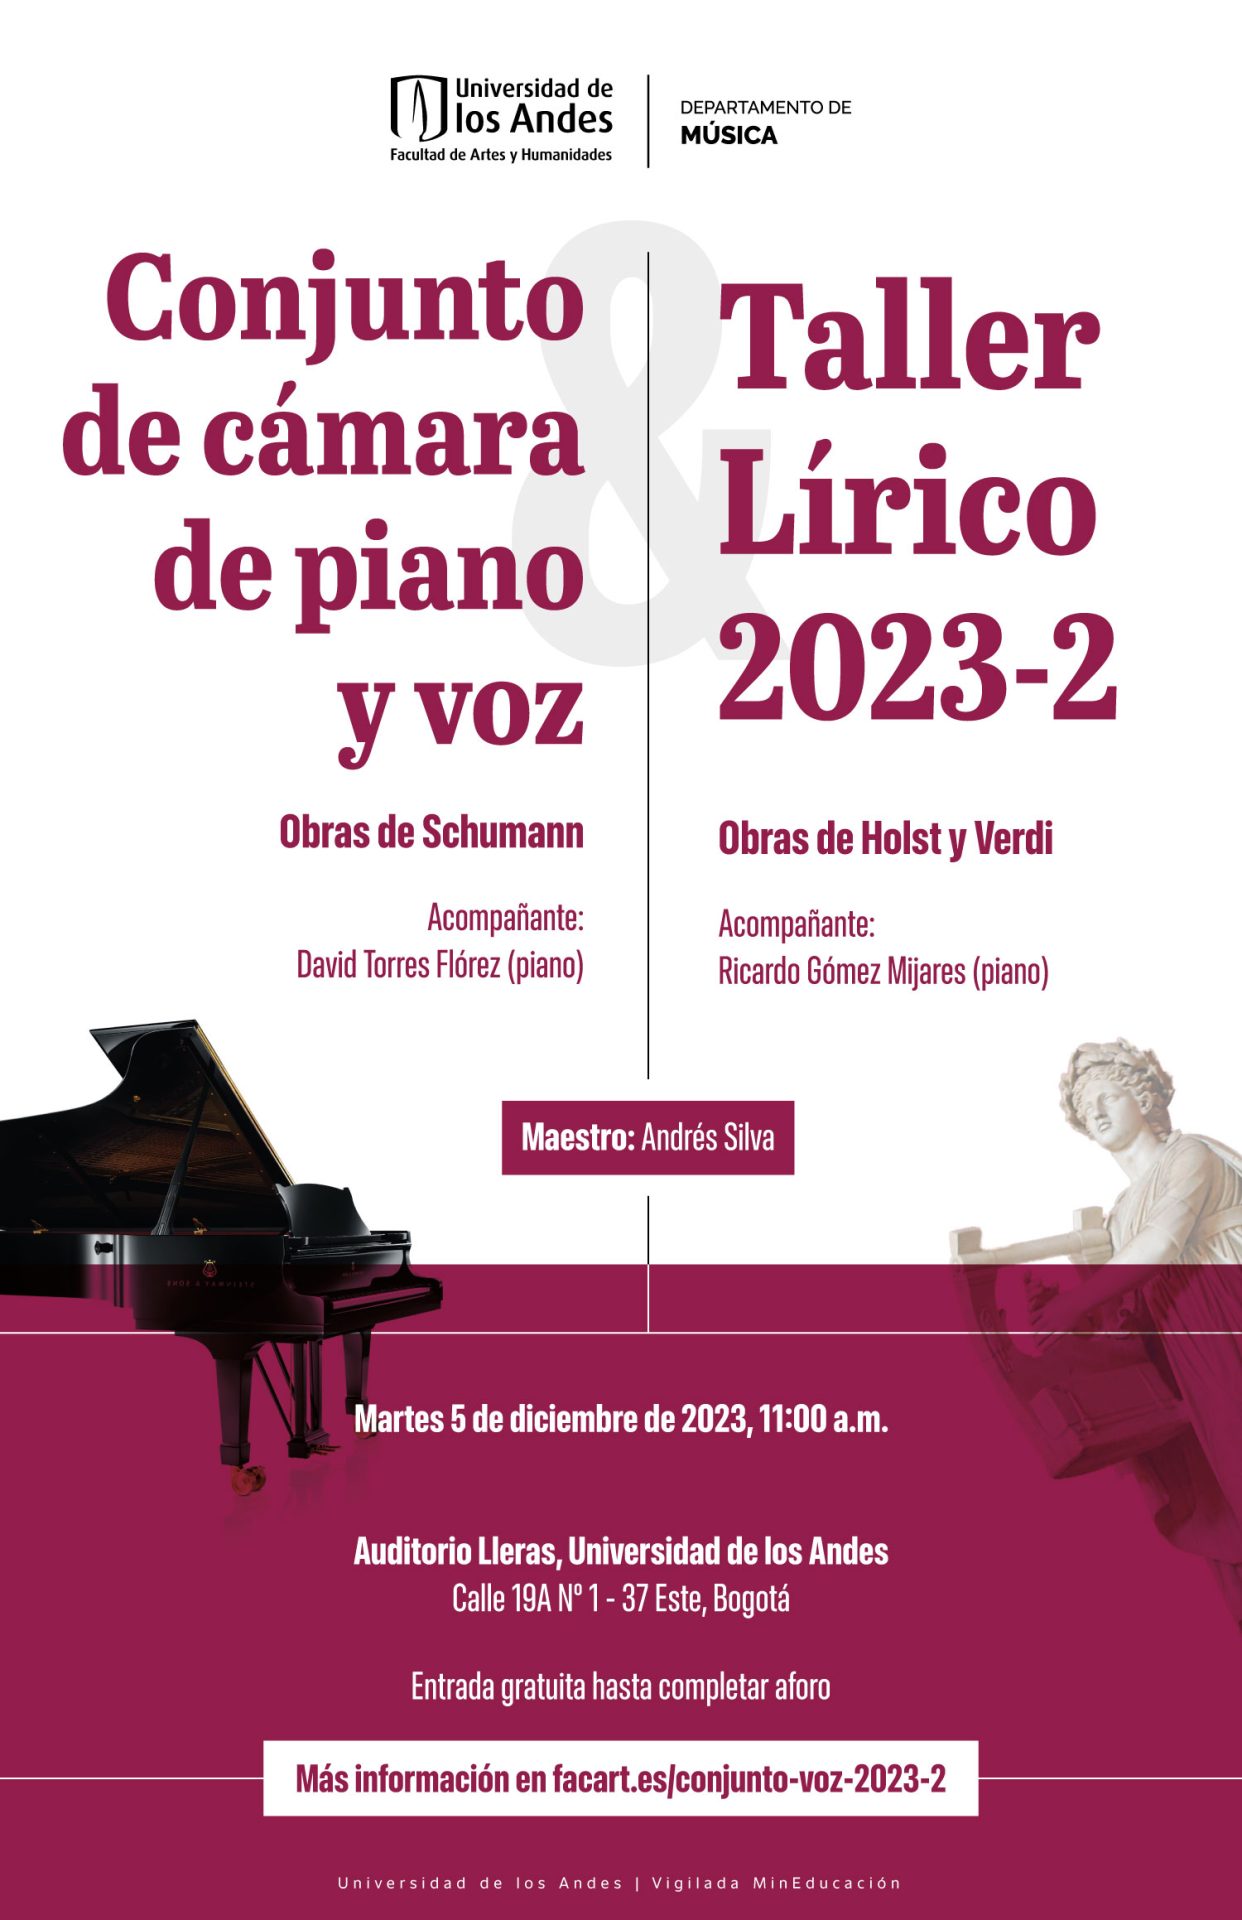 Martes 5 de diciembre de 2023 a las 11:00 a.m. en el Auditorio Lleras, Universidad de los Andes